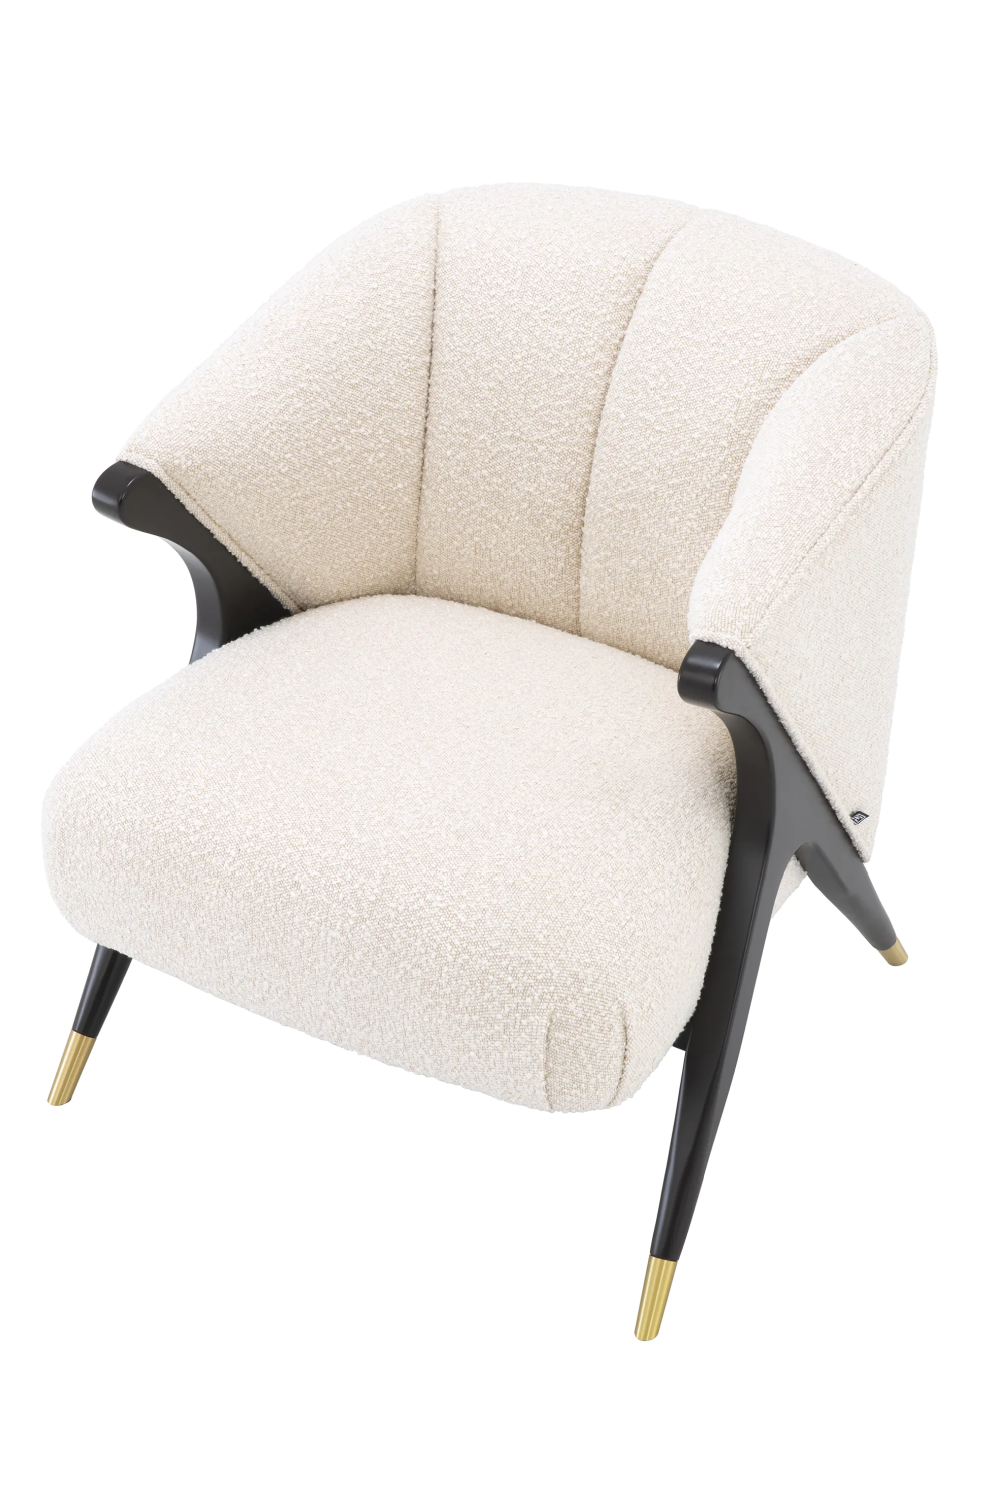 Cream Bouclé Accent Chair | Eichholtz Pavone | Oroa.com